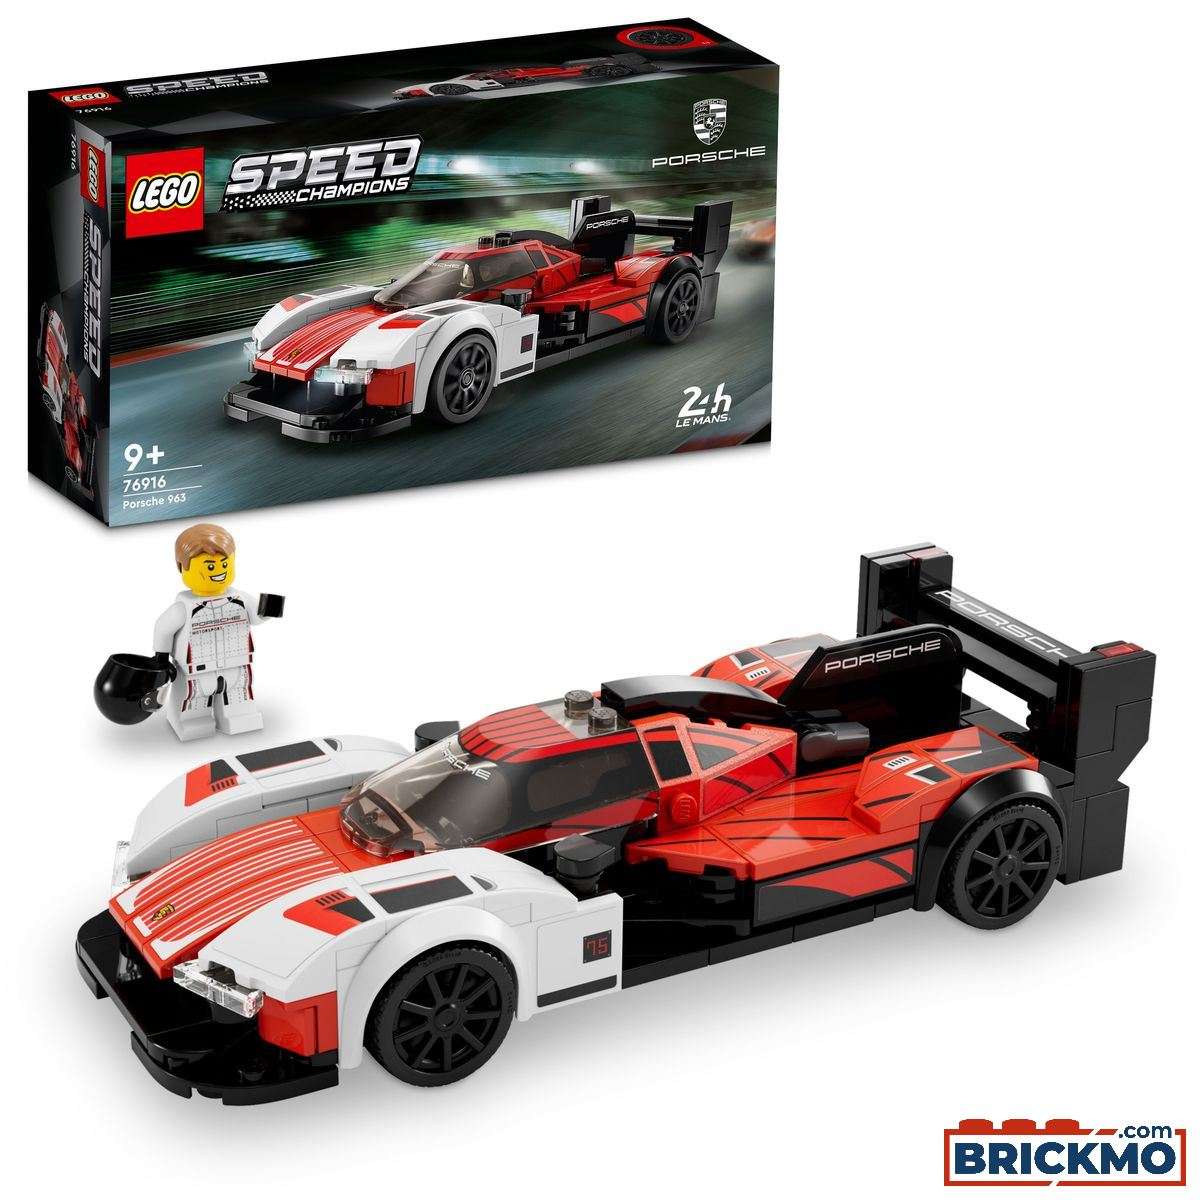 LEGO Speed Champions 76916 Porsche 963 76916